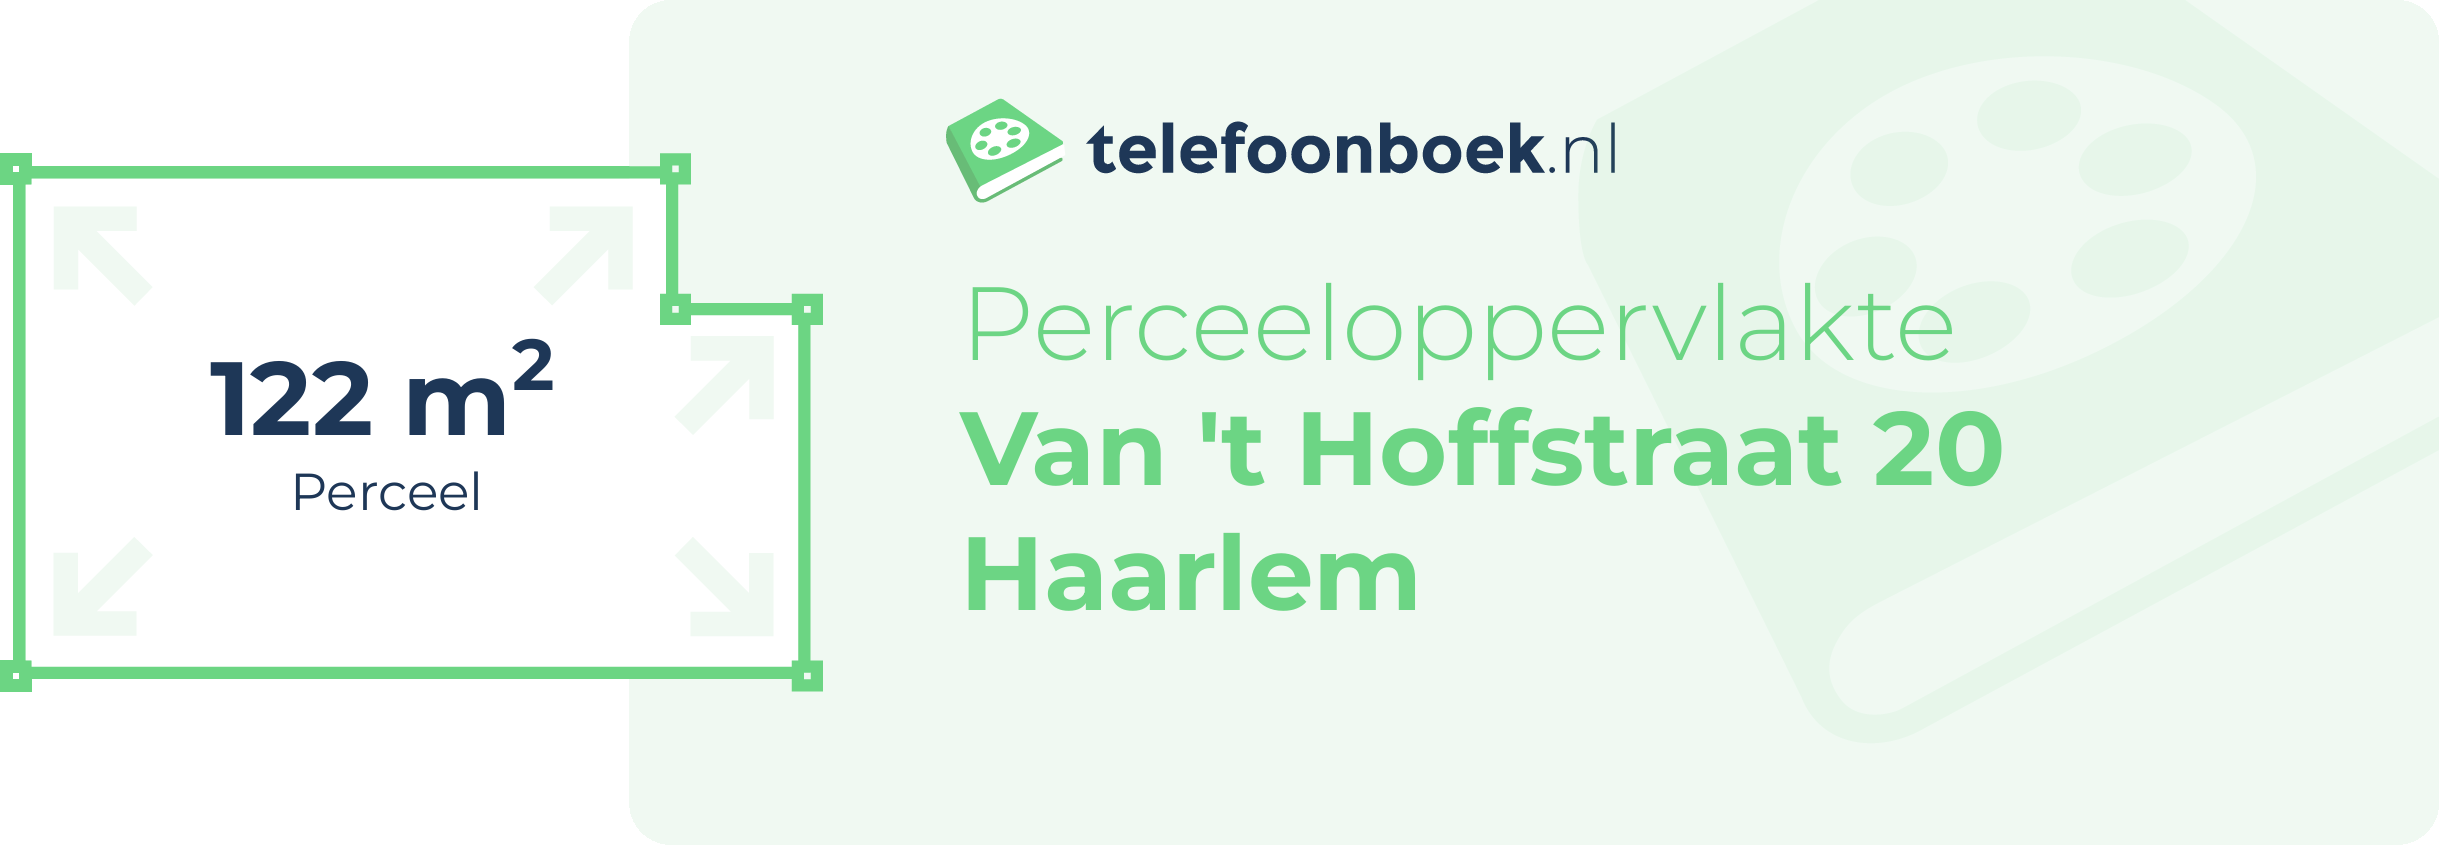 Perceeloppervlakte Van 't Hoffstraat 20 Haarlem